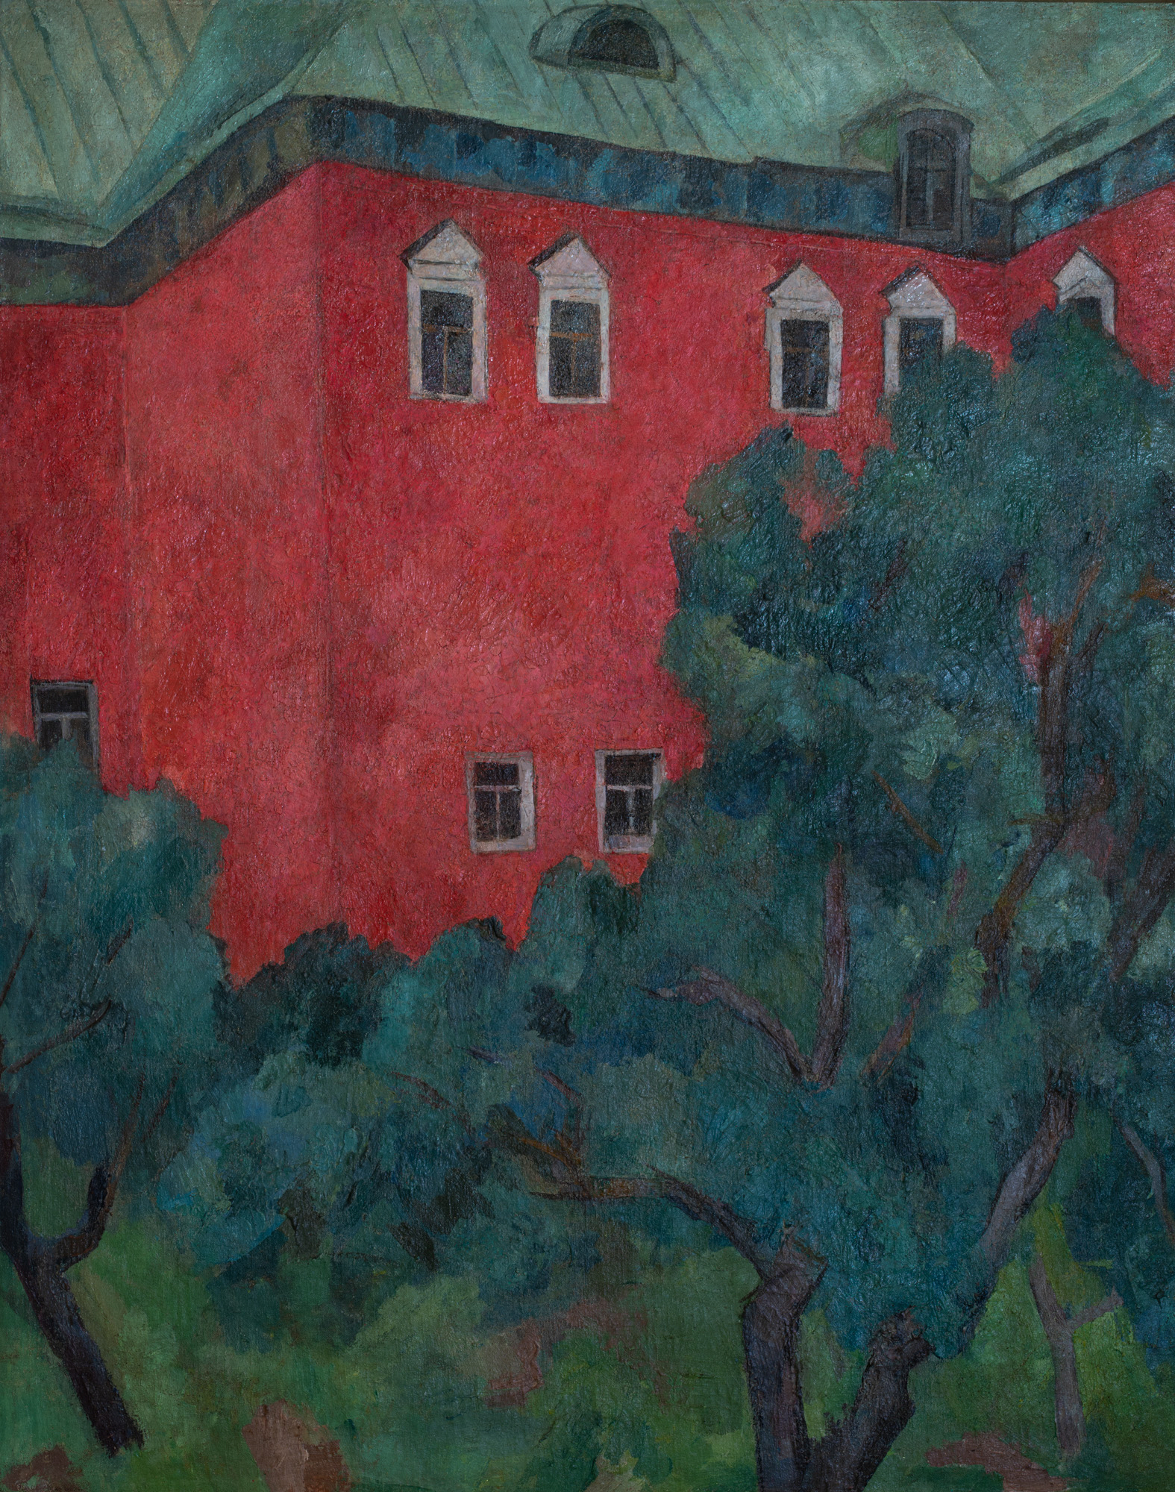 РОБЕРТ ФАЛЬК (1886–1956)
Пейзаж с красным домом. Около 1910
Холст, масло. 80 × 64,5 см